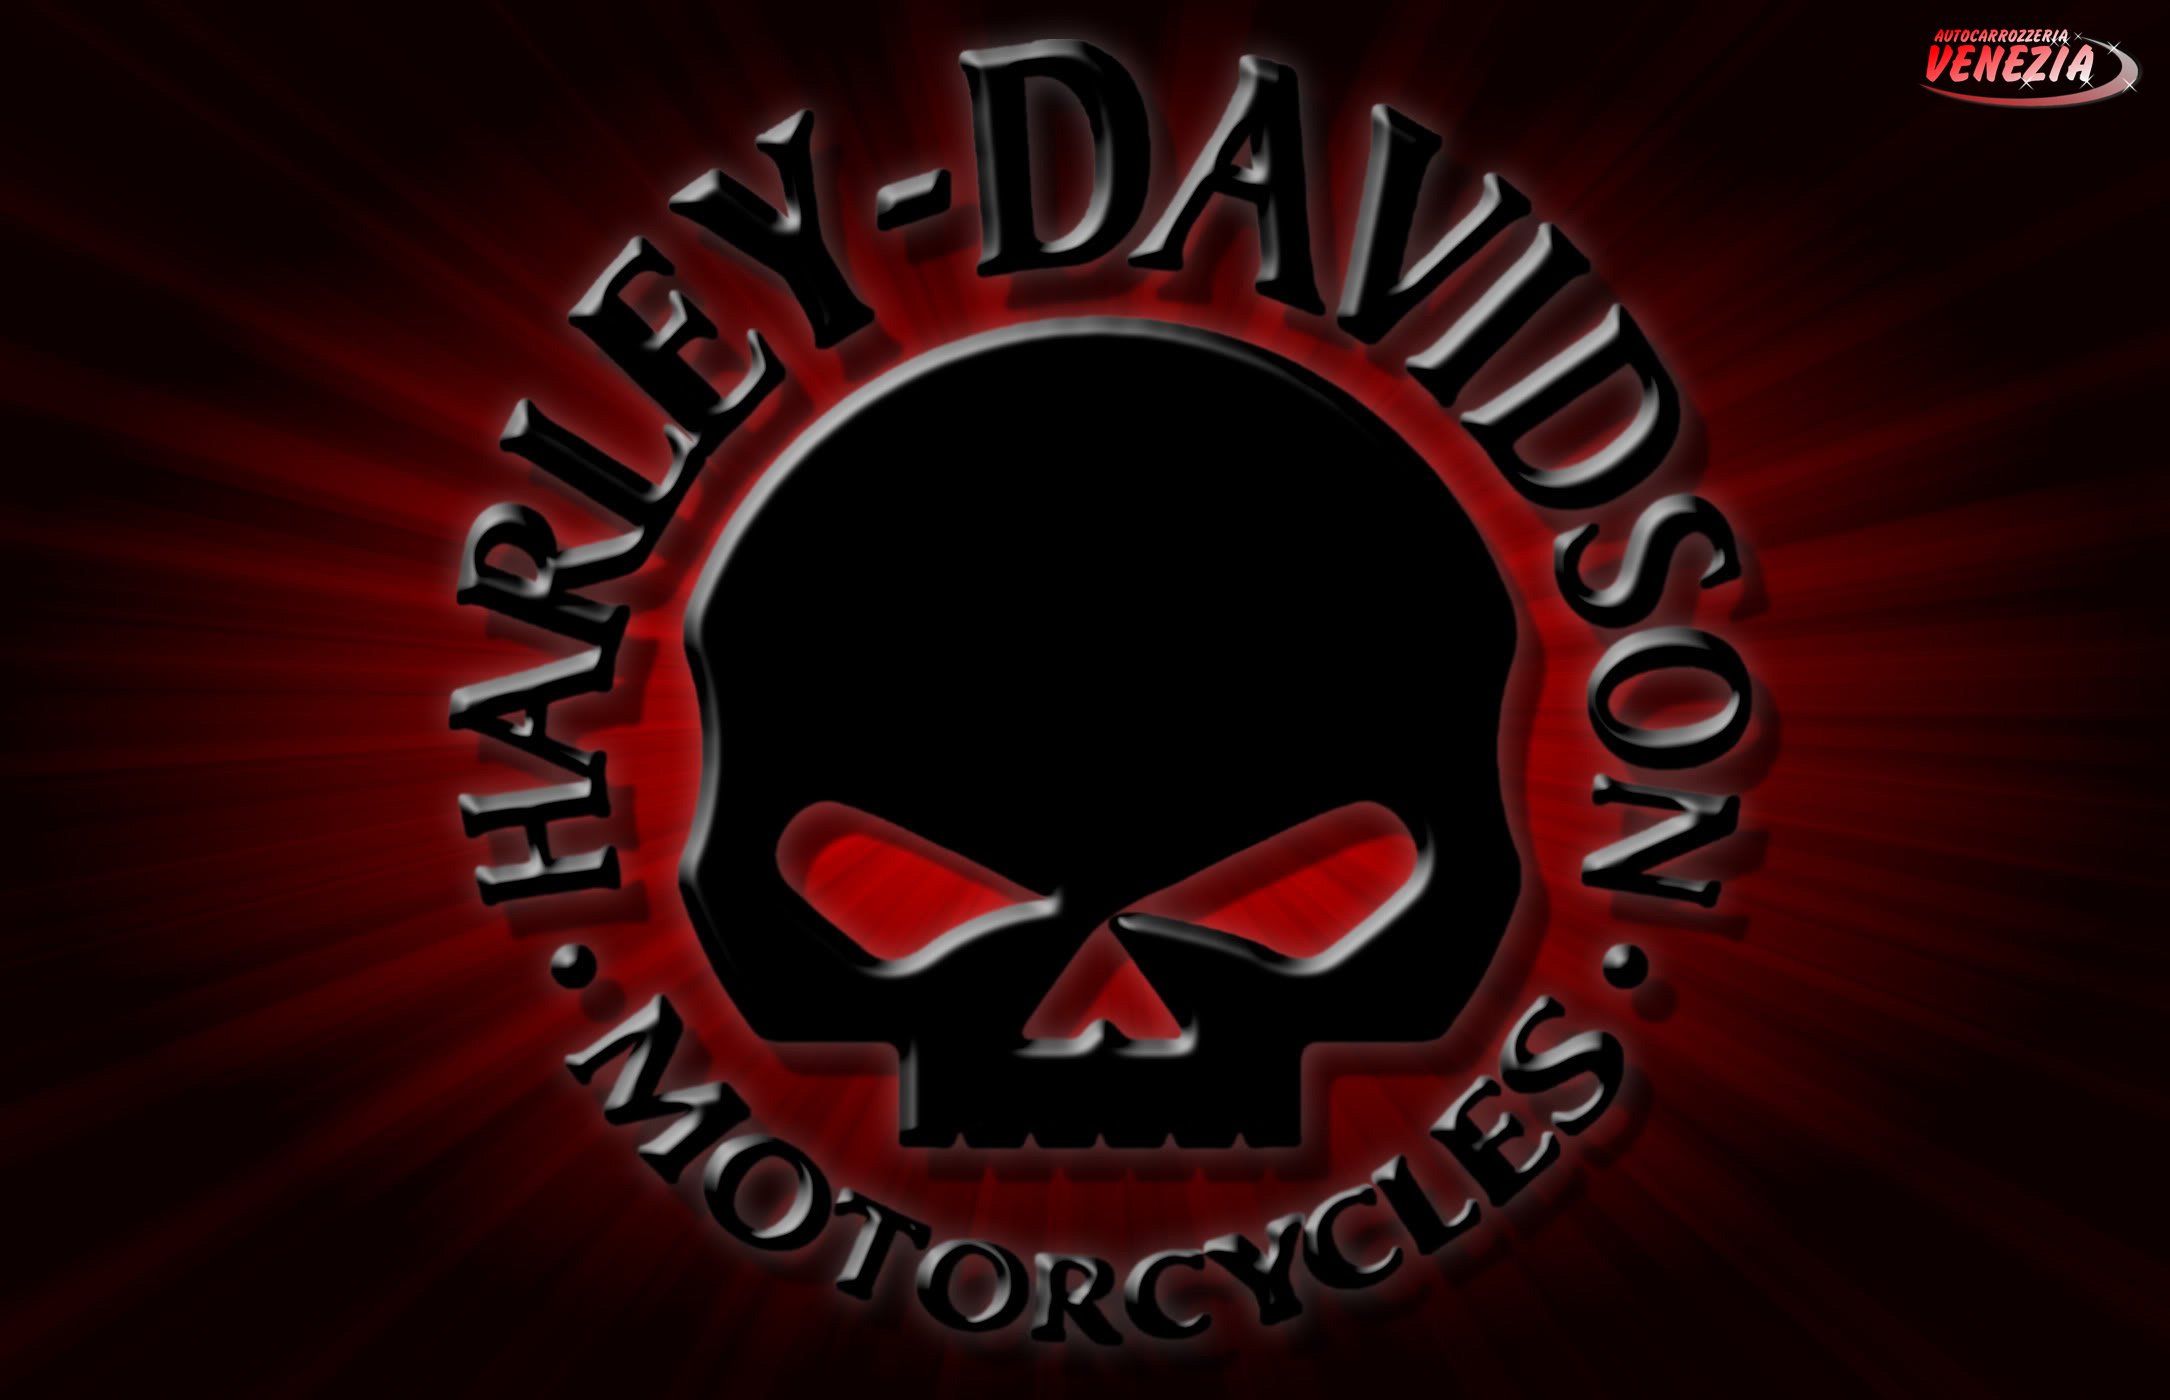 Willie G Harley Davidson Pinterest